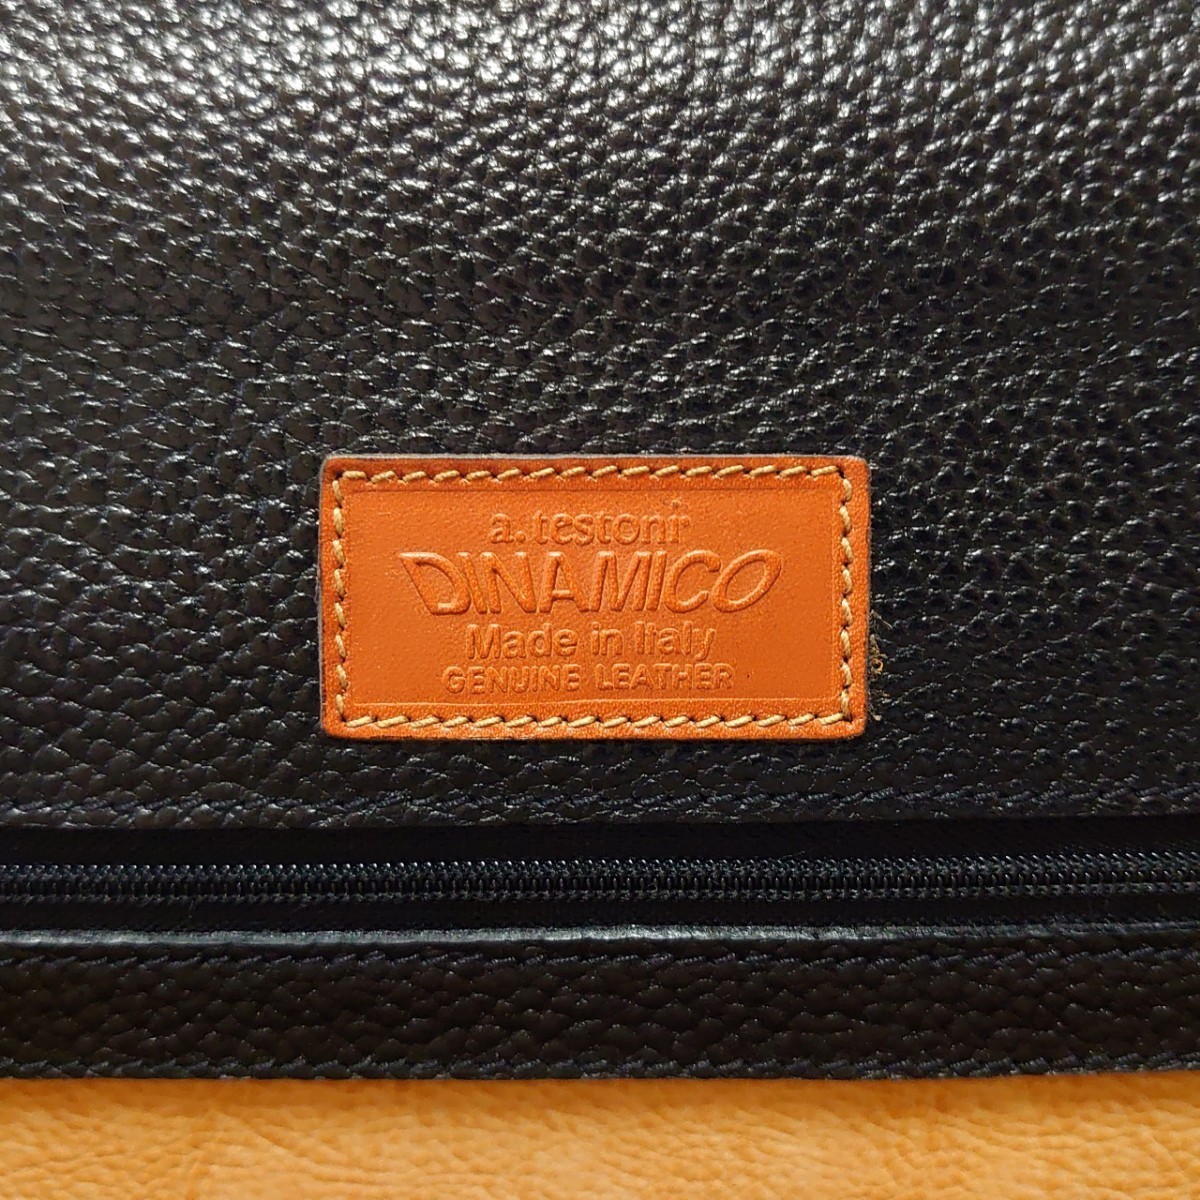 未使用 高級 a.testoni ア. テストーニ DINAMICO メンズ 2WAY 鍵付 ビジネスバッグ ショルダーバッグ 書類鞄 ブリーフケース イタリア製_画像9